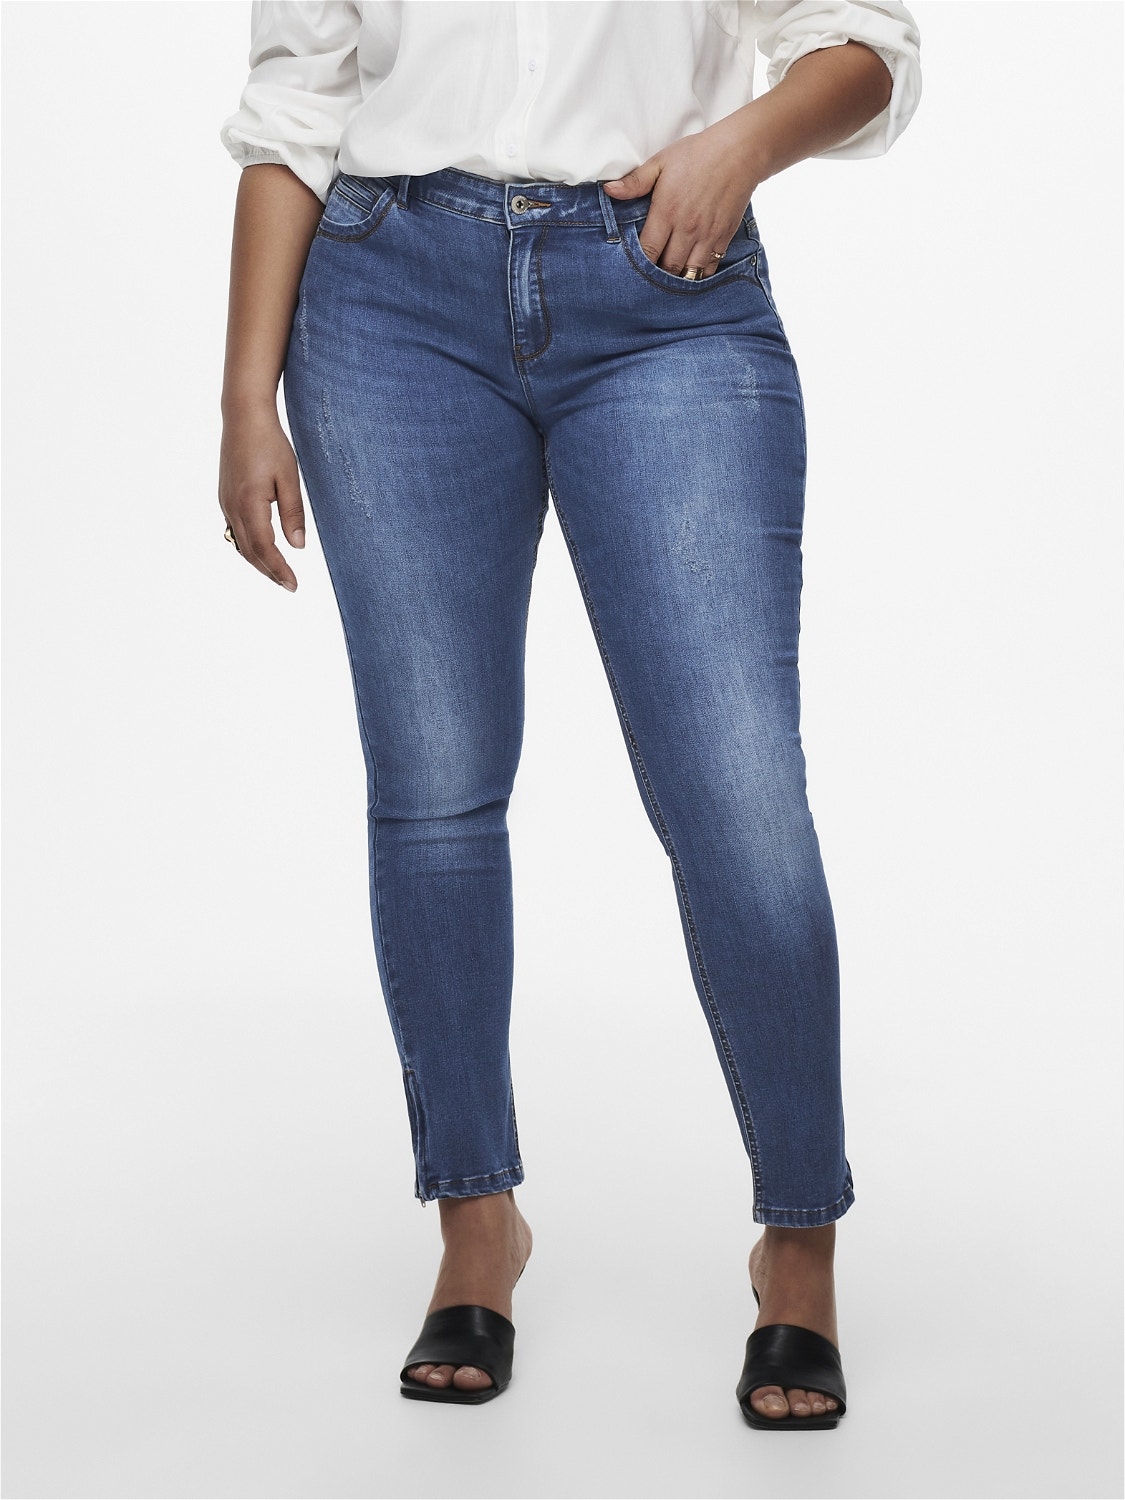 | | reg grande fit skinny tobillo ONLY® Jeans Azul CarKarla talla intermedio al